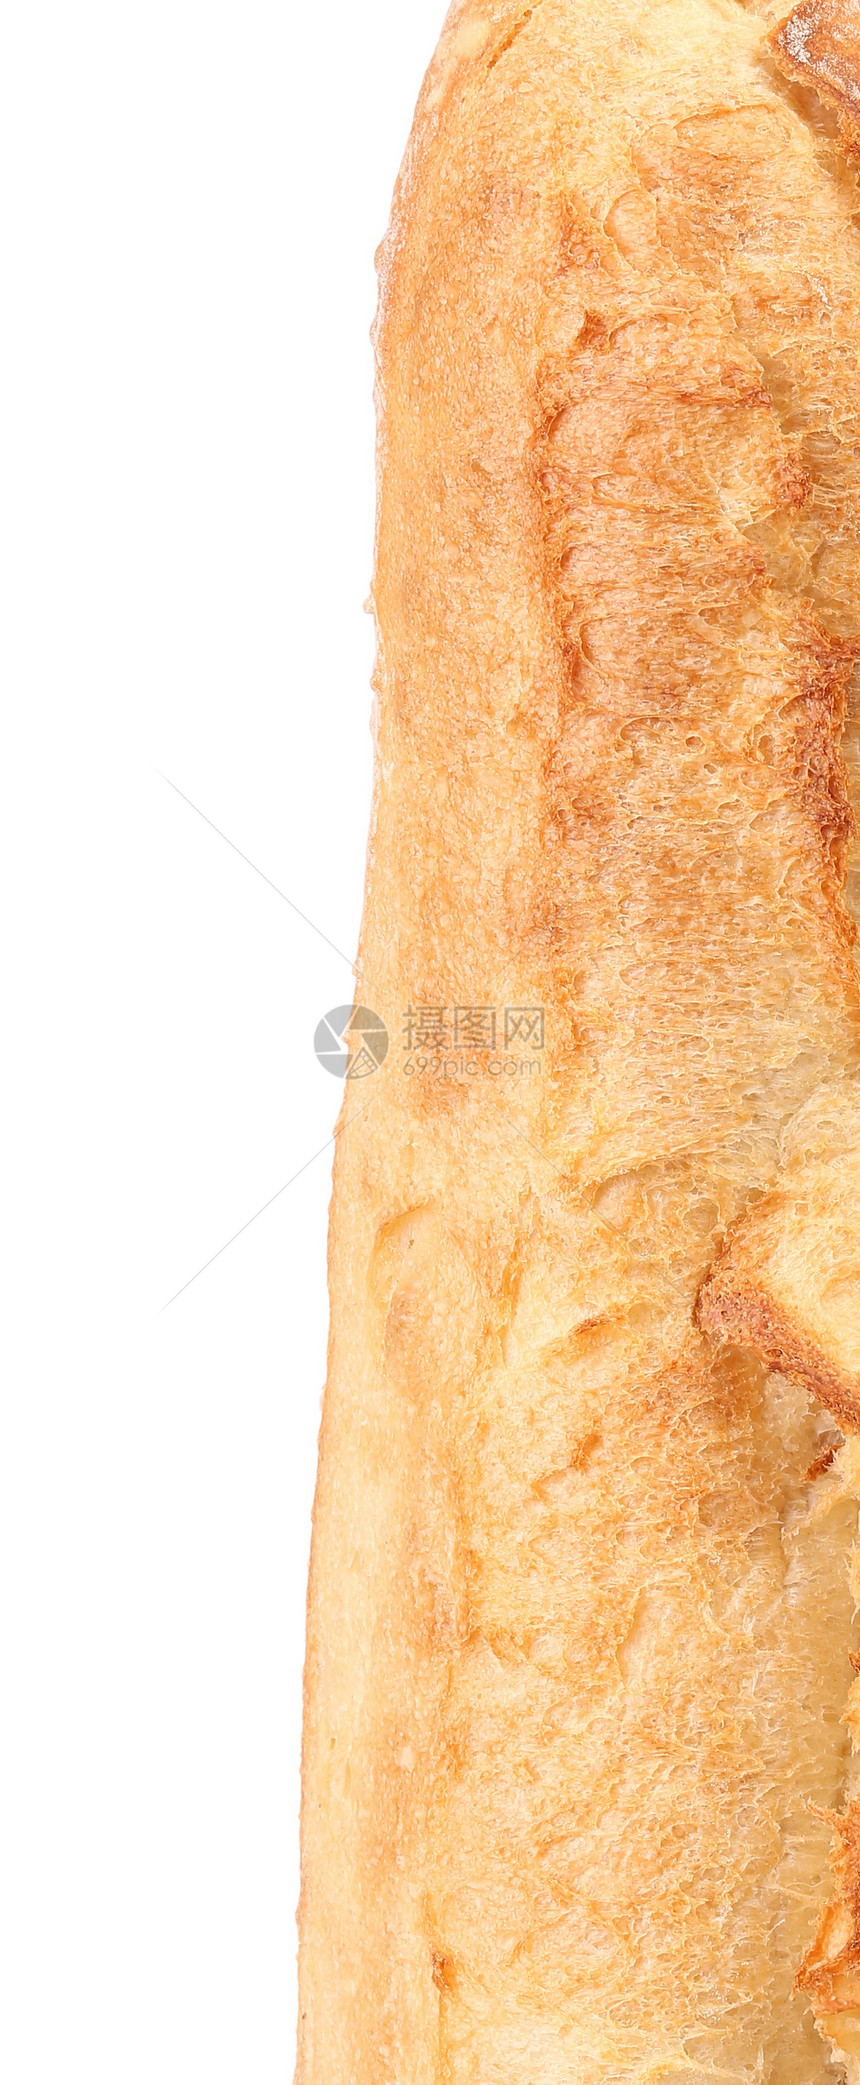 撕裂白面包 关门噼啪脆皮种子食物收成谷物粮食面粉食欲耳朵图片